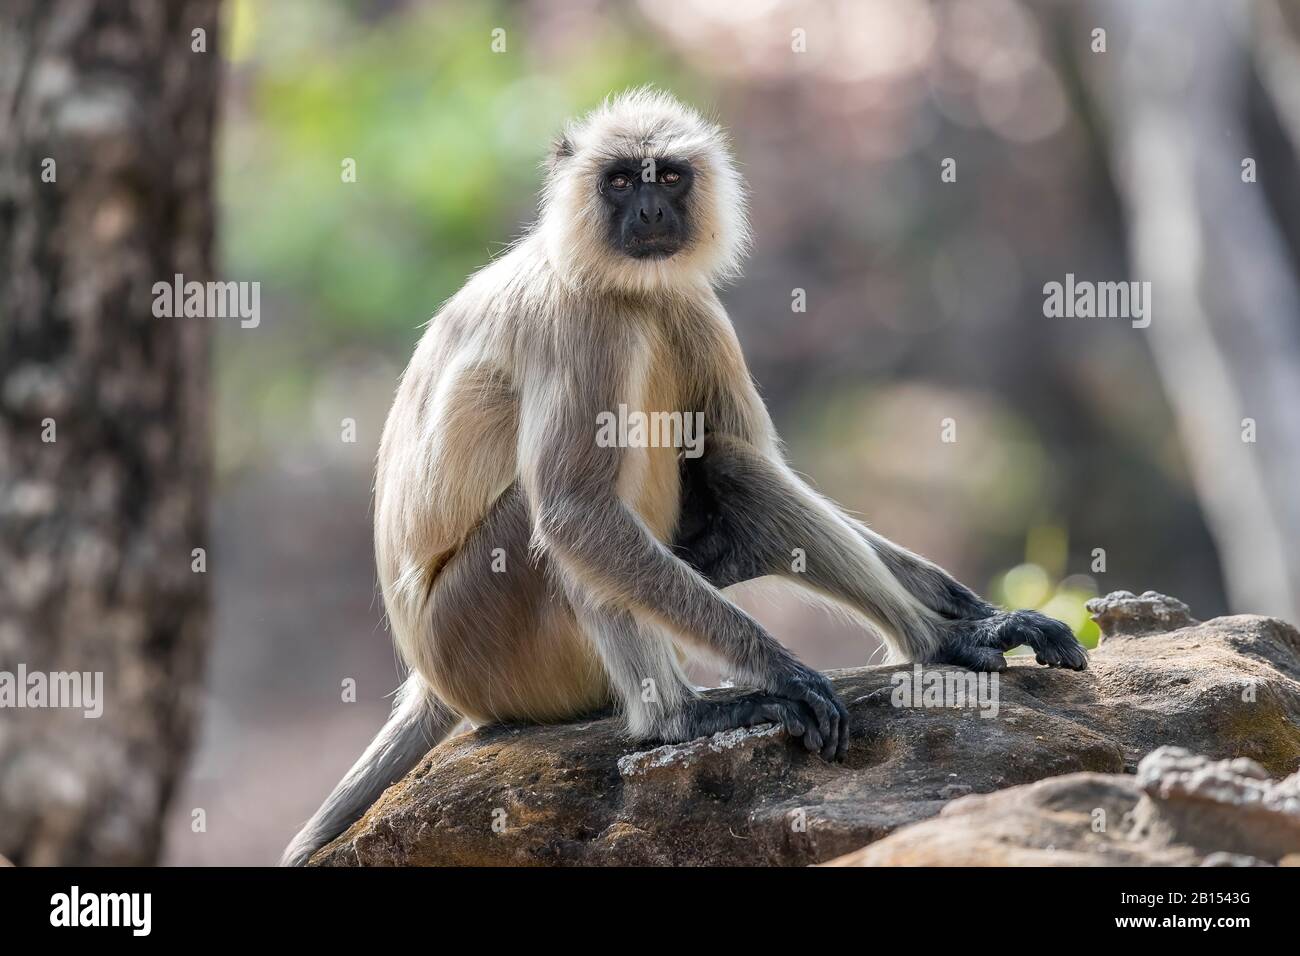 Heilige Langur, indische Langur, Hanuman Langur, Northern Plains Grey Langur, Hanuman Monkey, Common Langur (Semnopithecus entellus, Presbytis entellus), auf einem Felsen sitzend, Indien, Bandhavgarh National Park Stockfoto